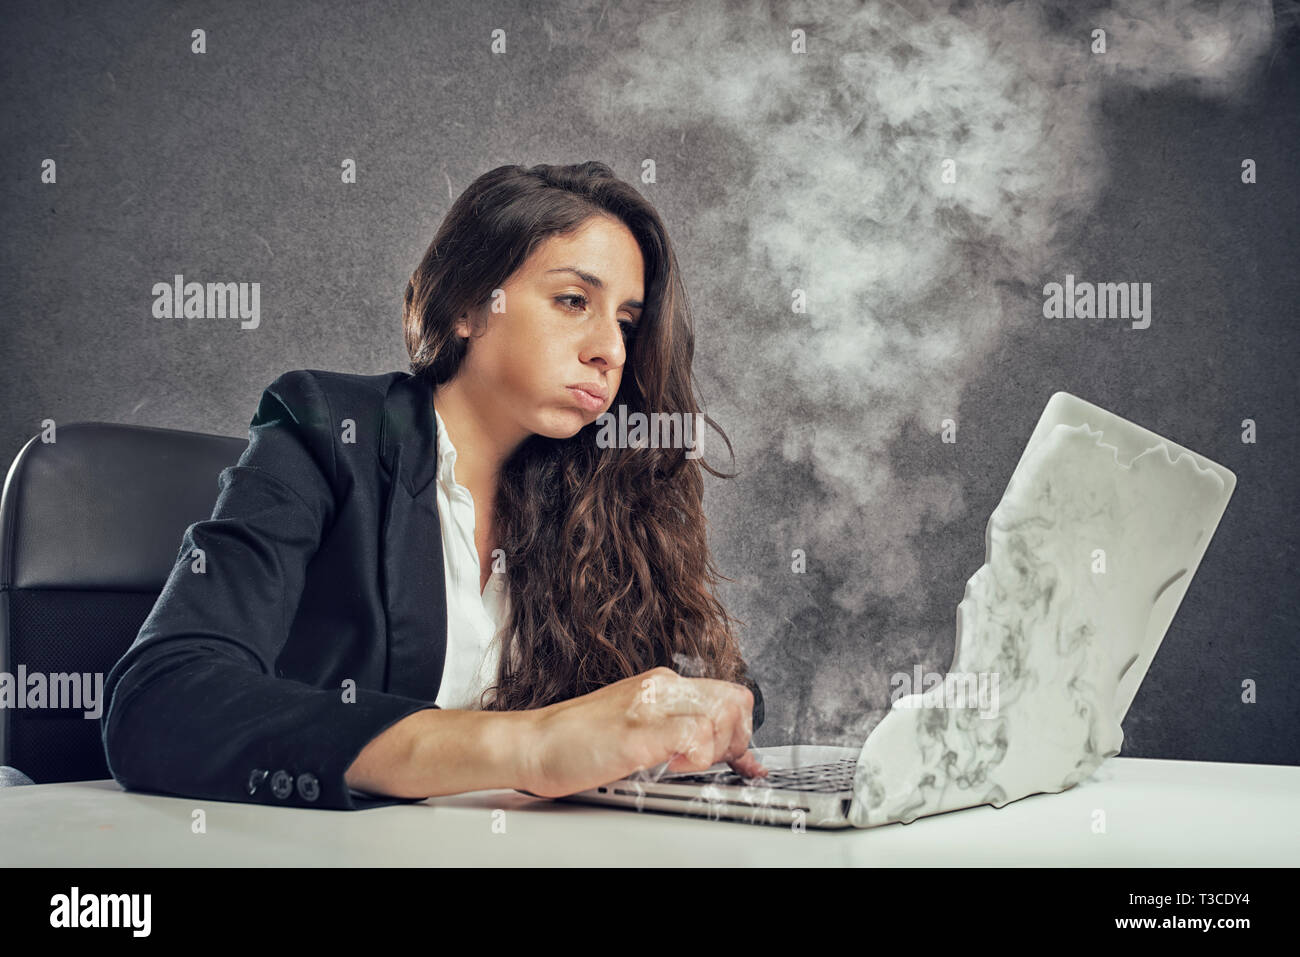 Frau betonte durch Überarbeitung mit dem Laptop schmelzen Stockfoto